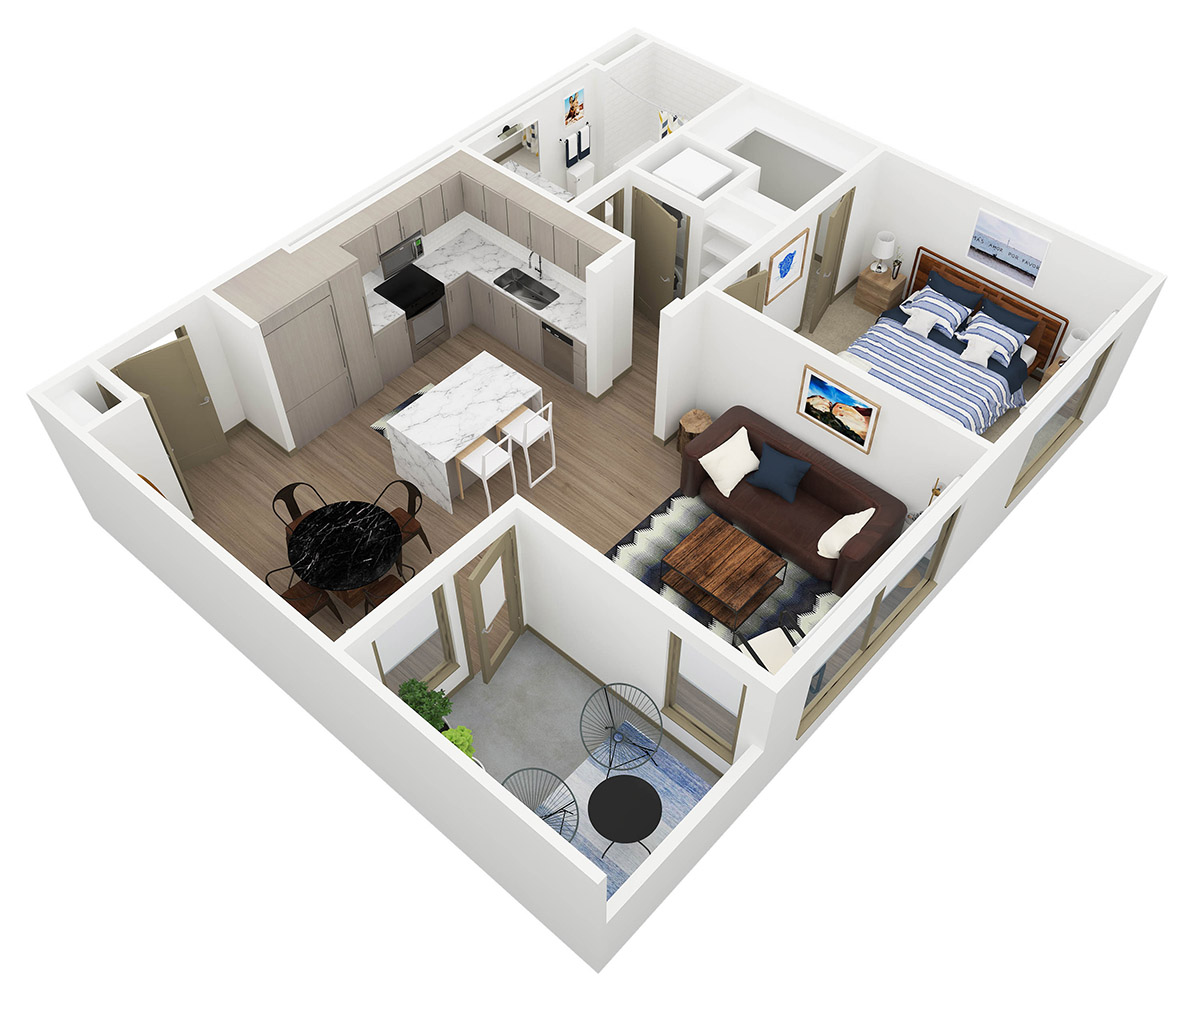 Persea 1 Bedroom Floor Plan - A1 - 3